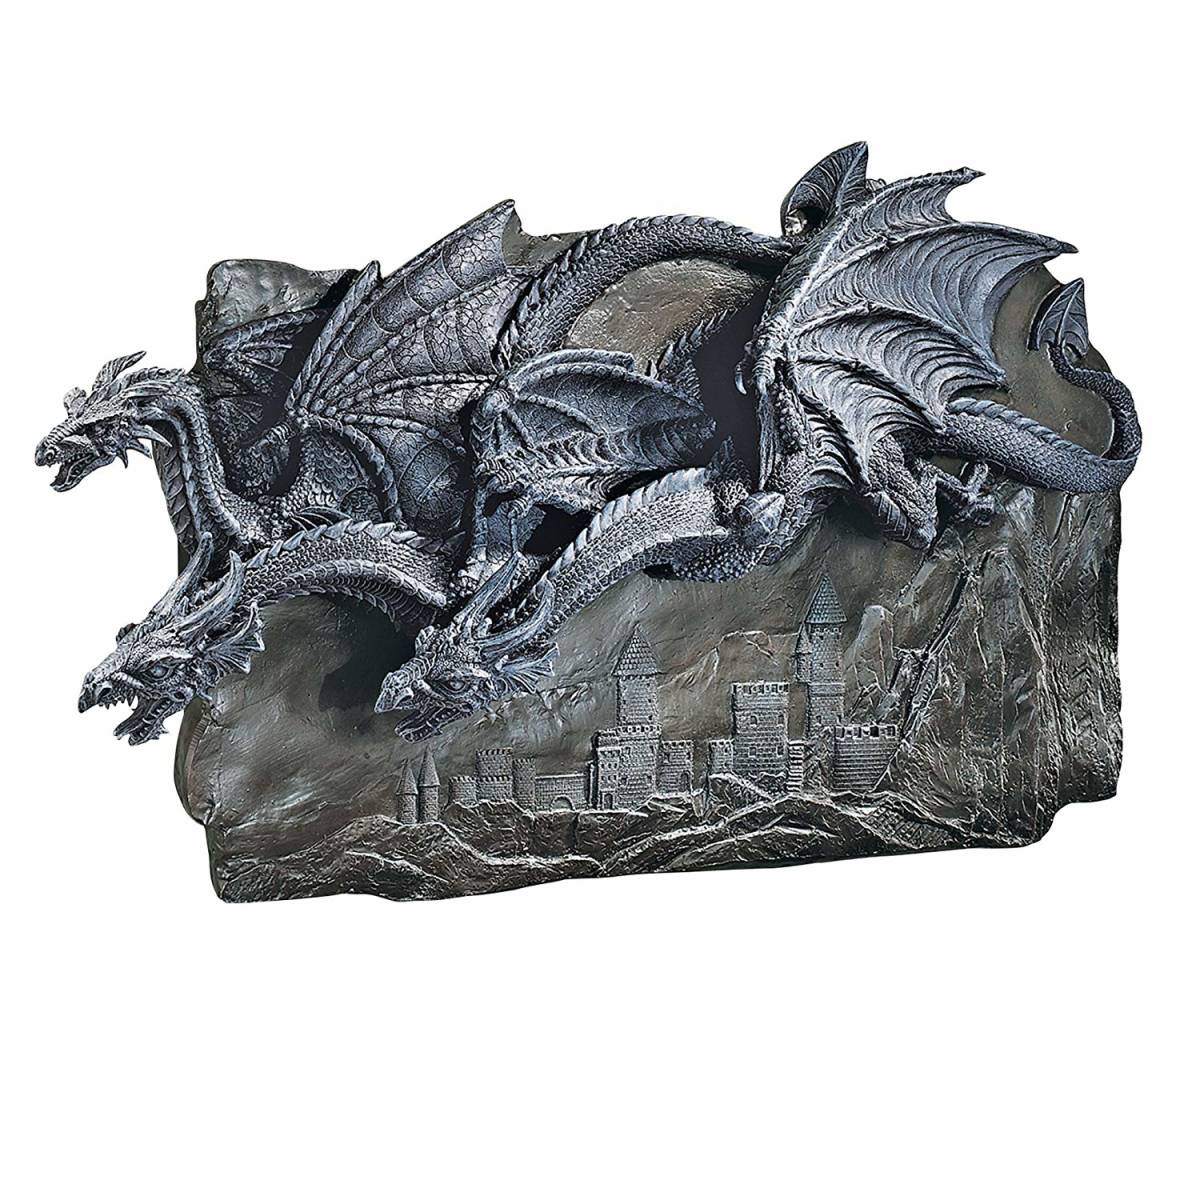 楽天市場 ゴシック風 モルゴス城のドラゴン 壁彫刻 装飾 彫像 Design Toscano Morgoth Castle Dragons Wall Sculpture 輸入品 浪漫堂ショップ